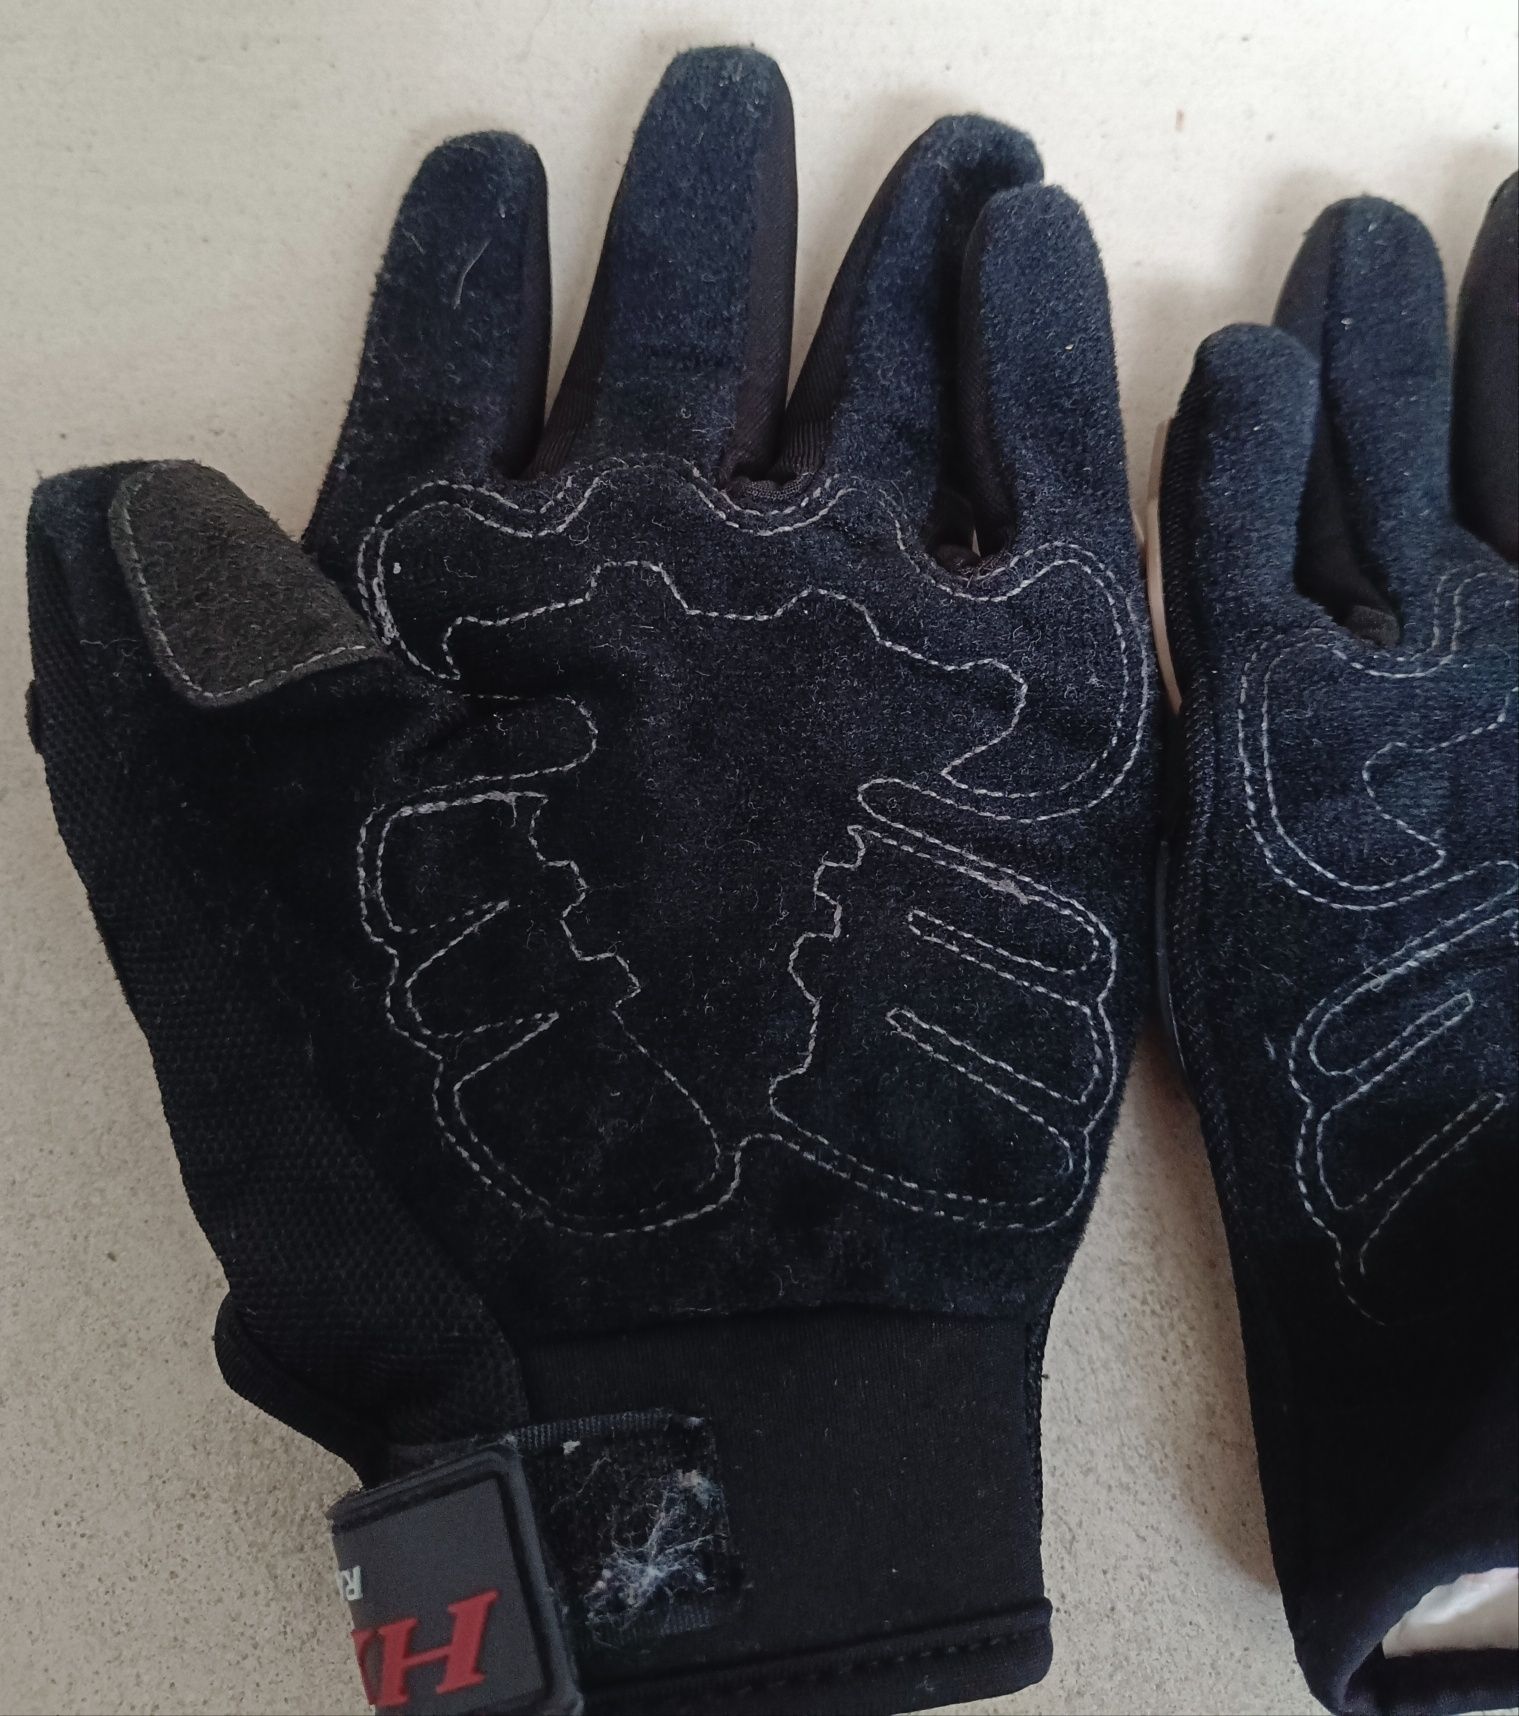 Luvas HX racing proteção de dedos - Tamanho M